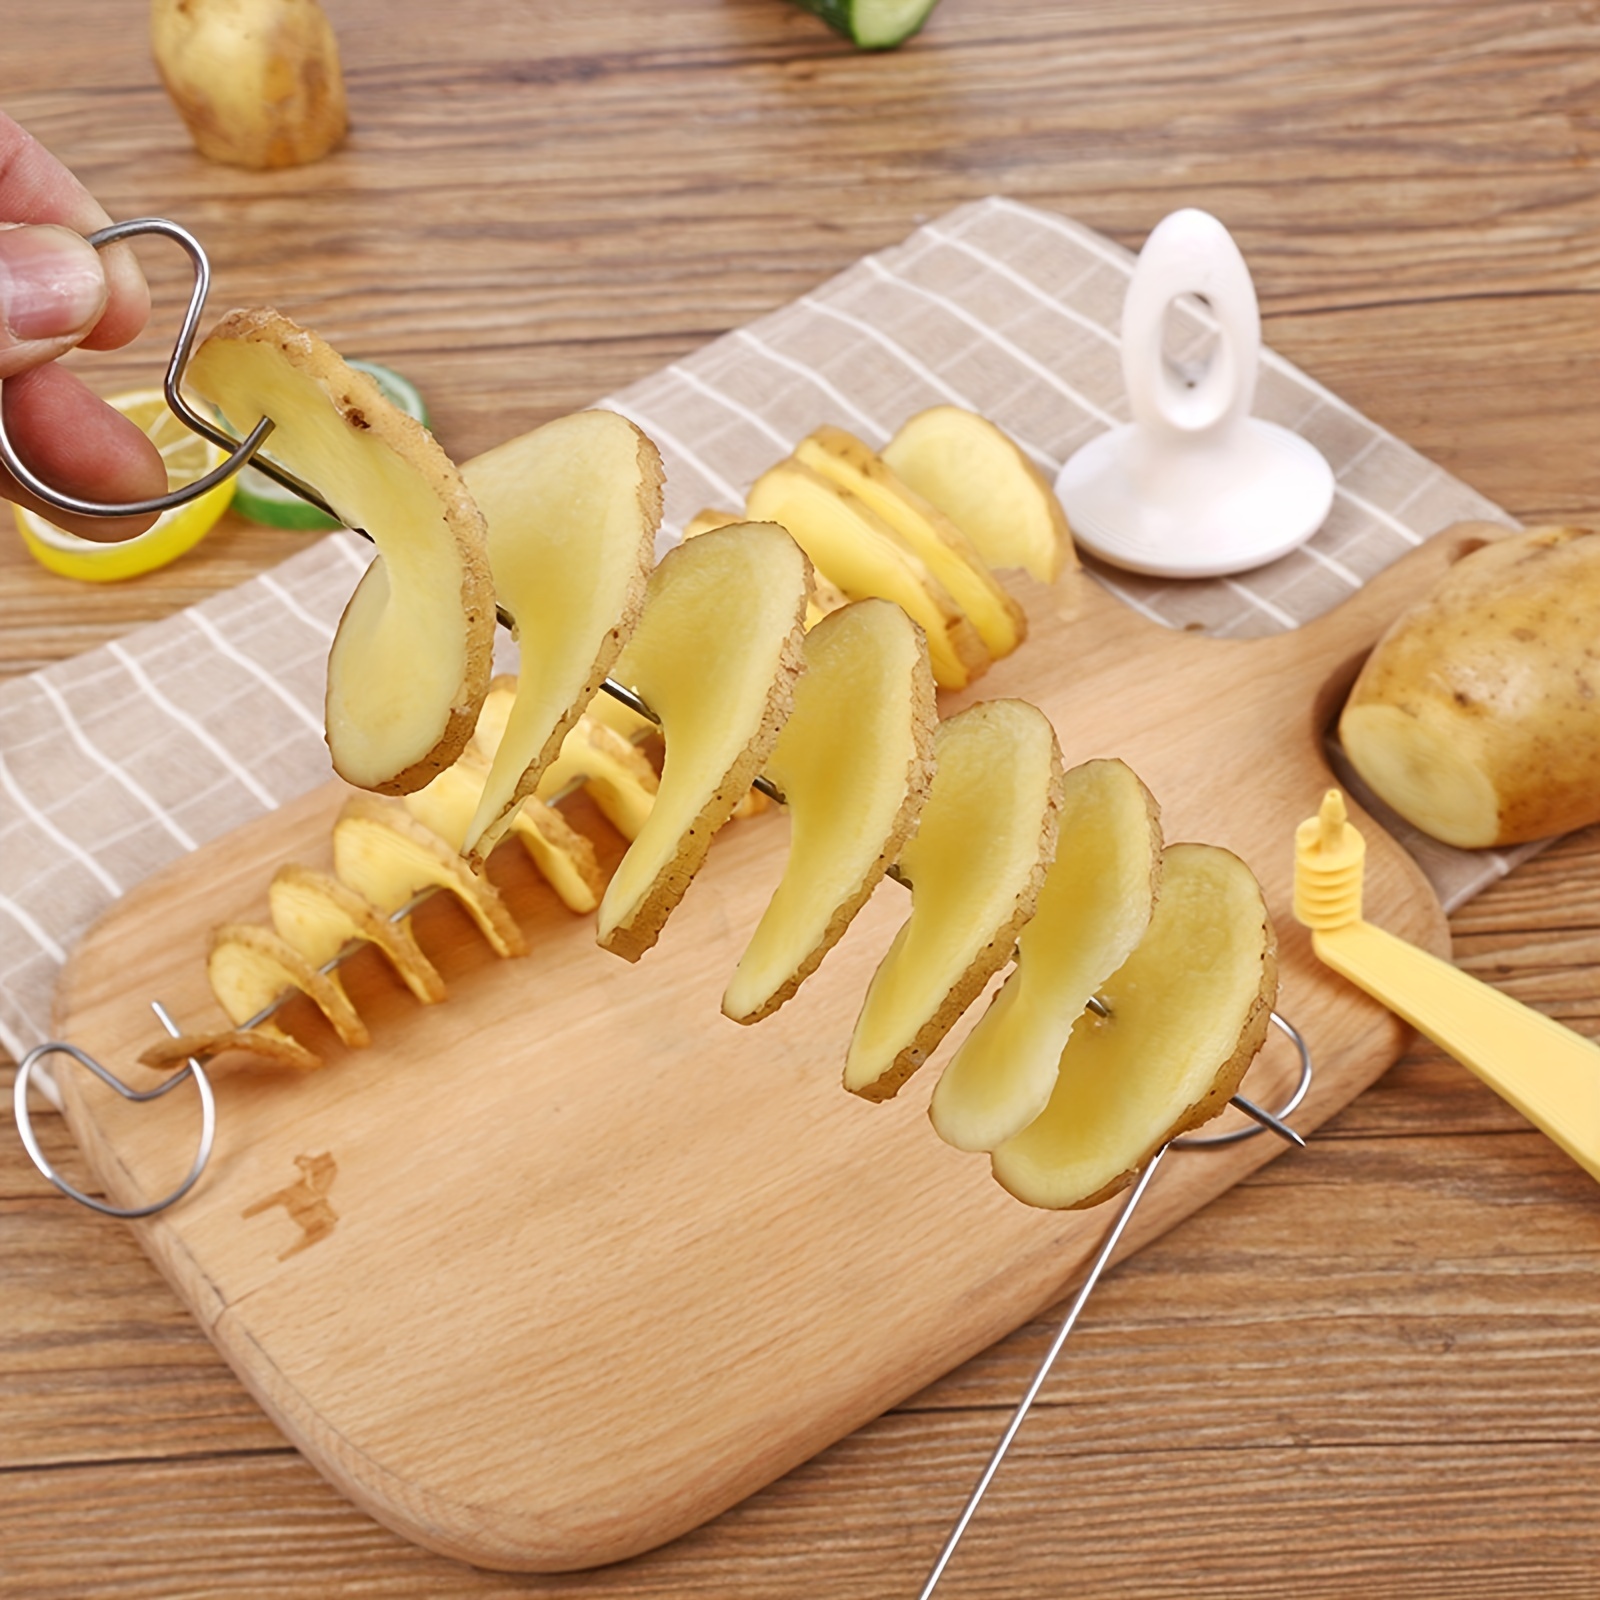 How to Make a Spiral Potato Cutter